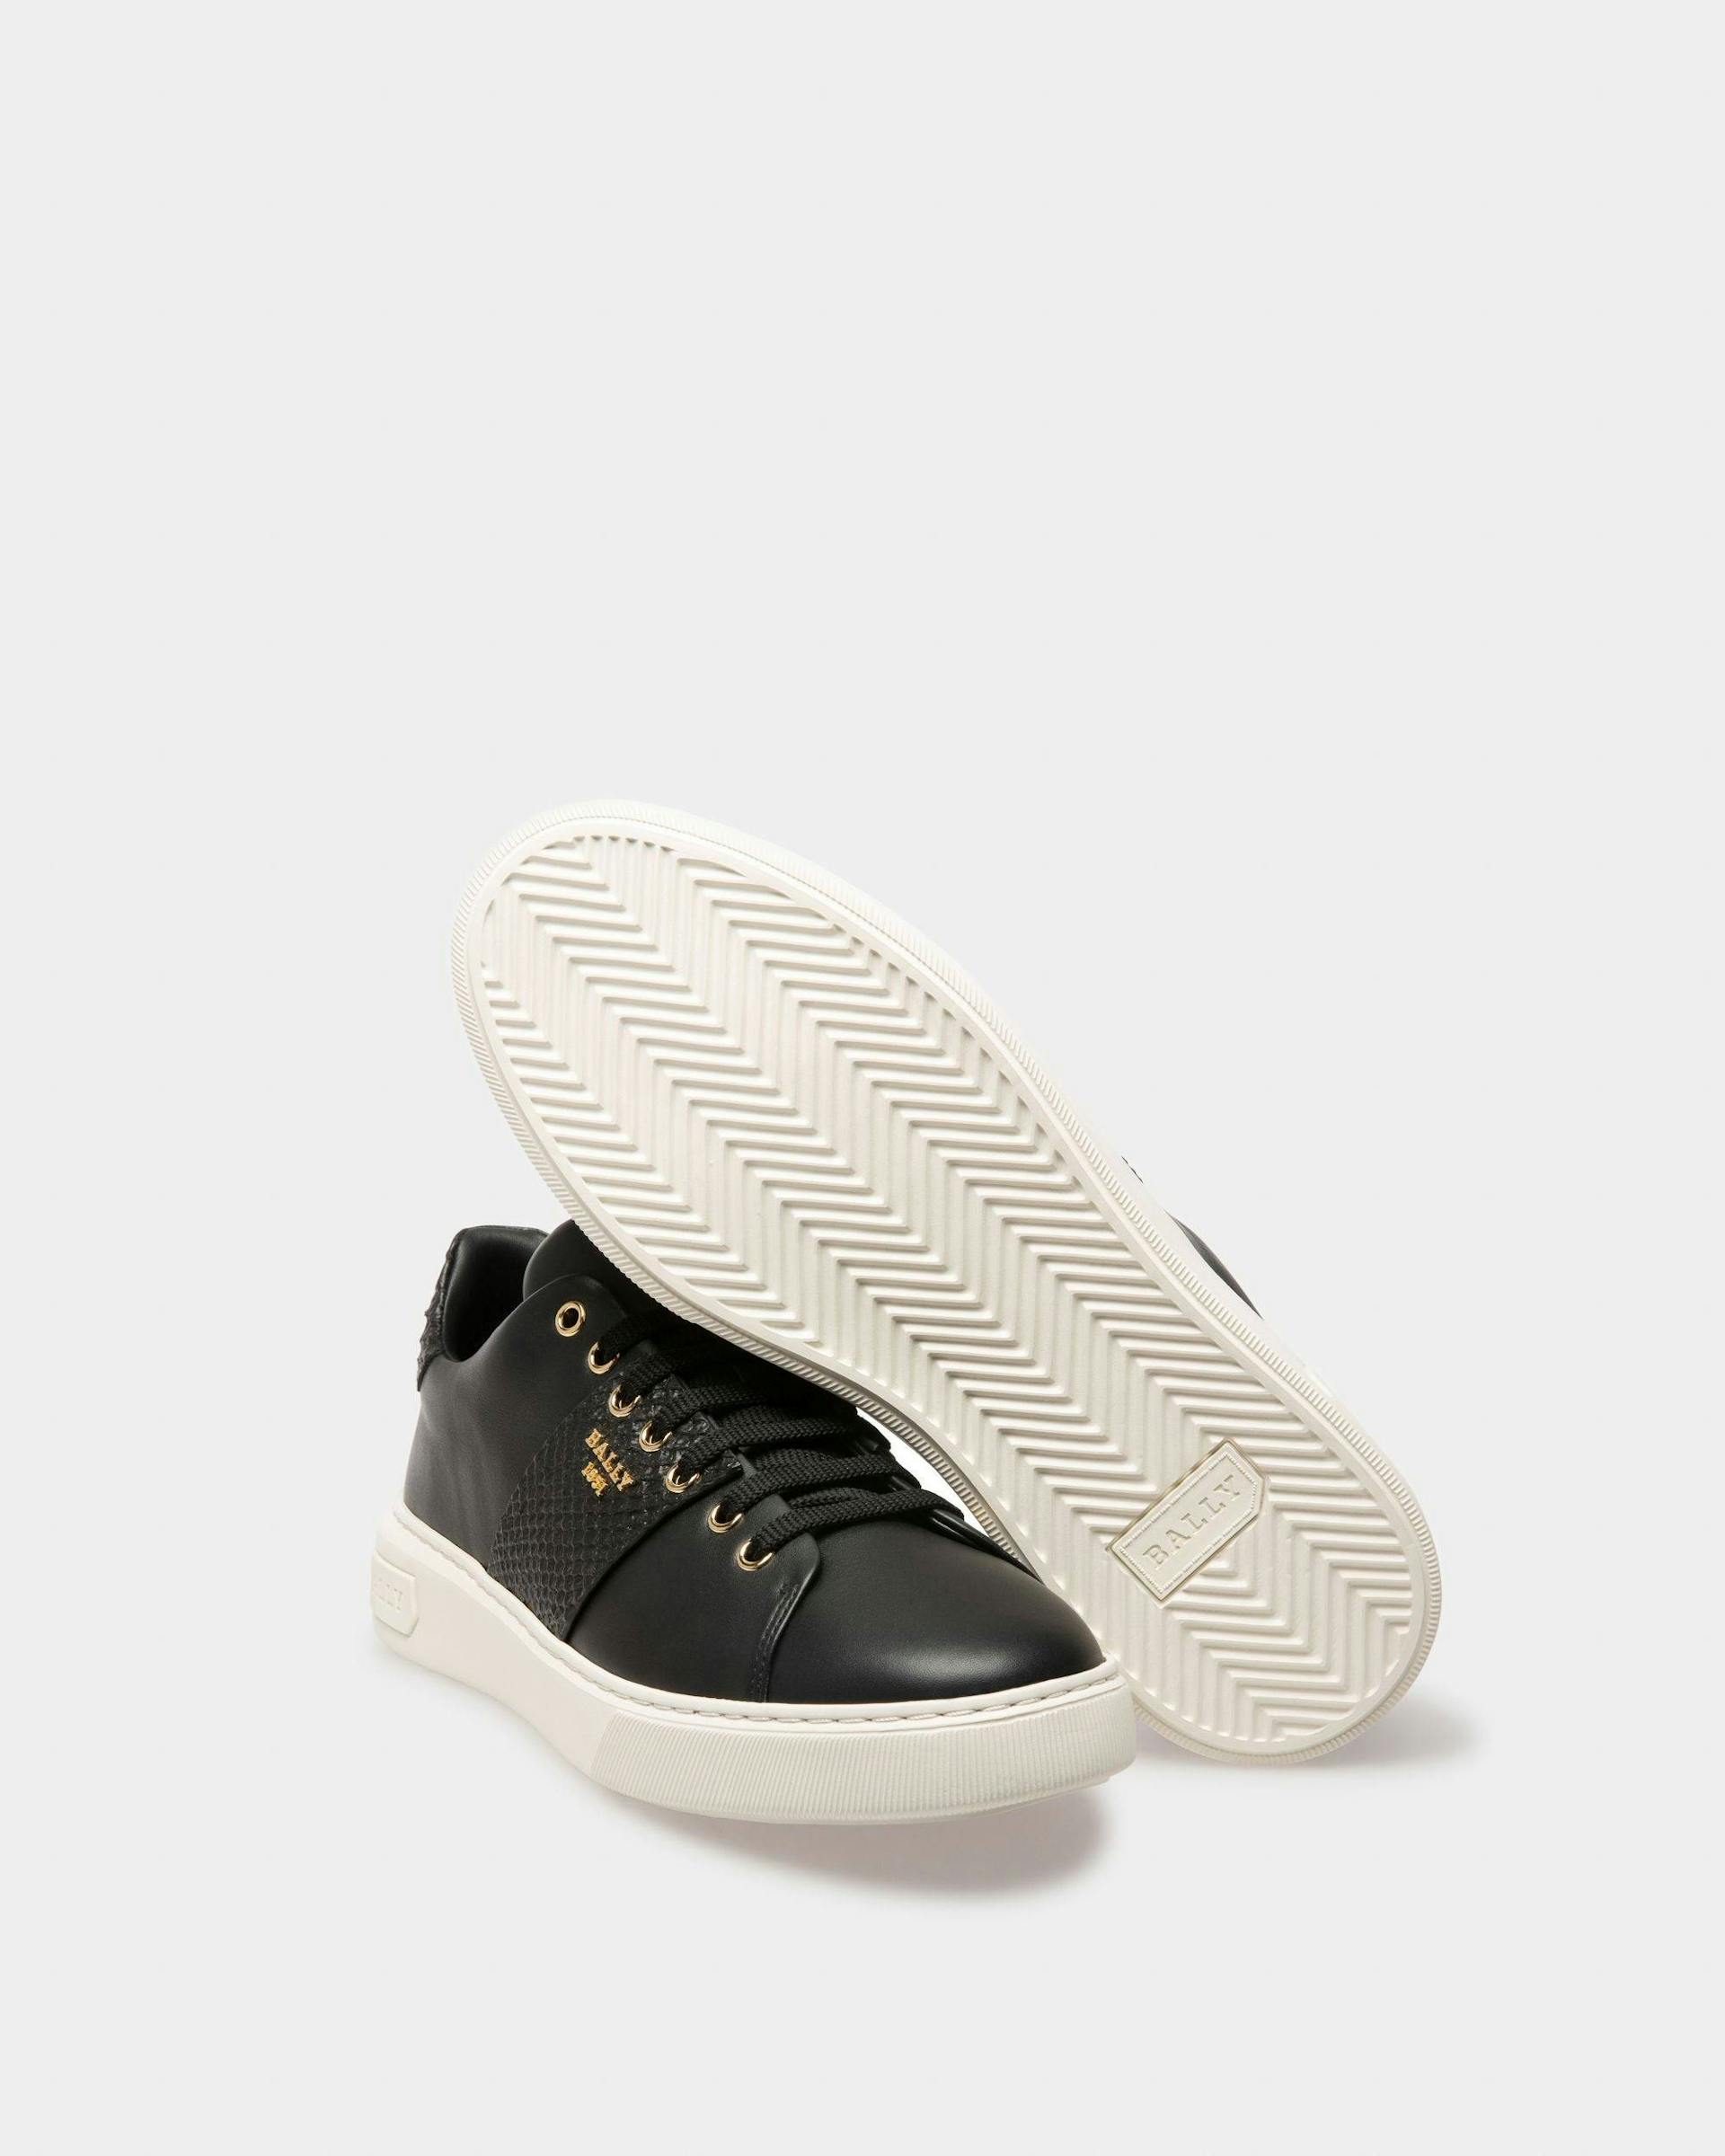 Mattye Leather Sneakers In Black - Men's - Bally - 05